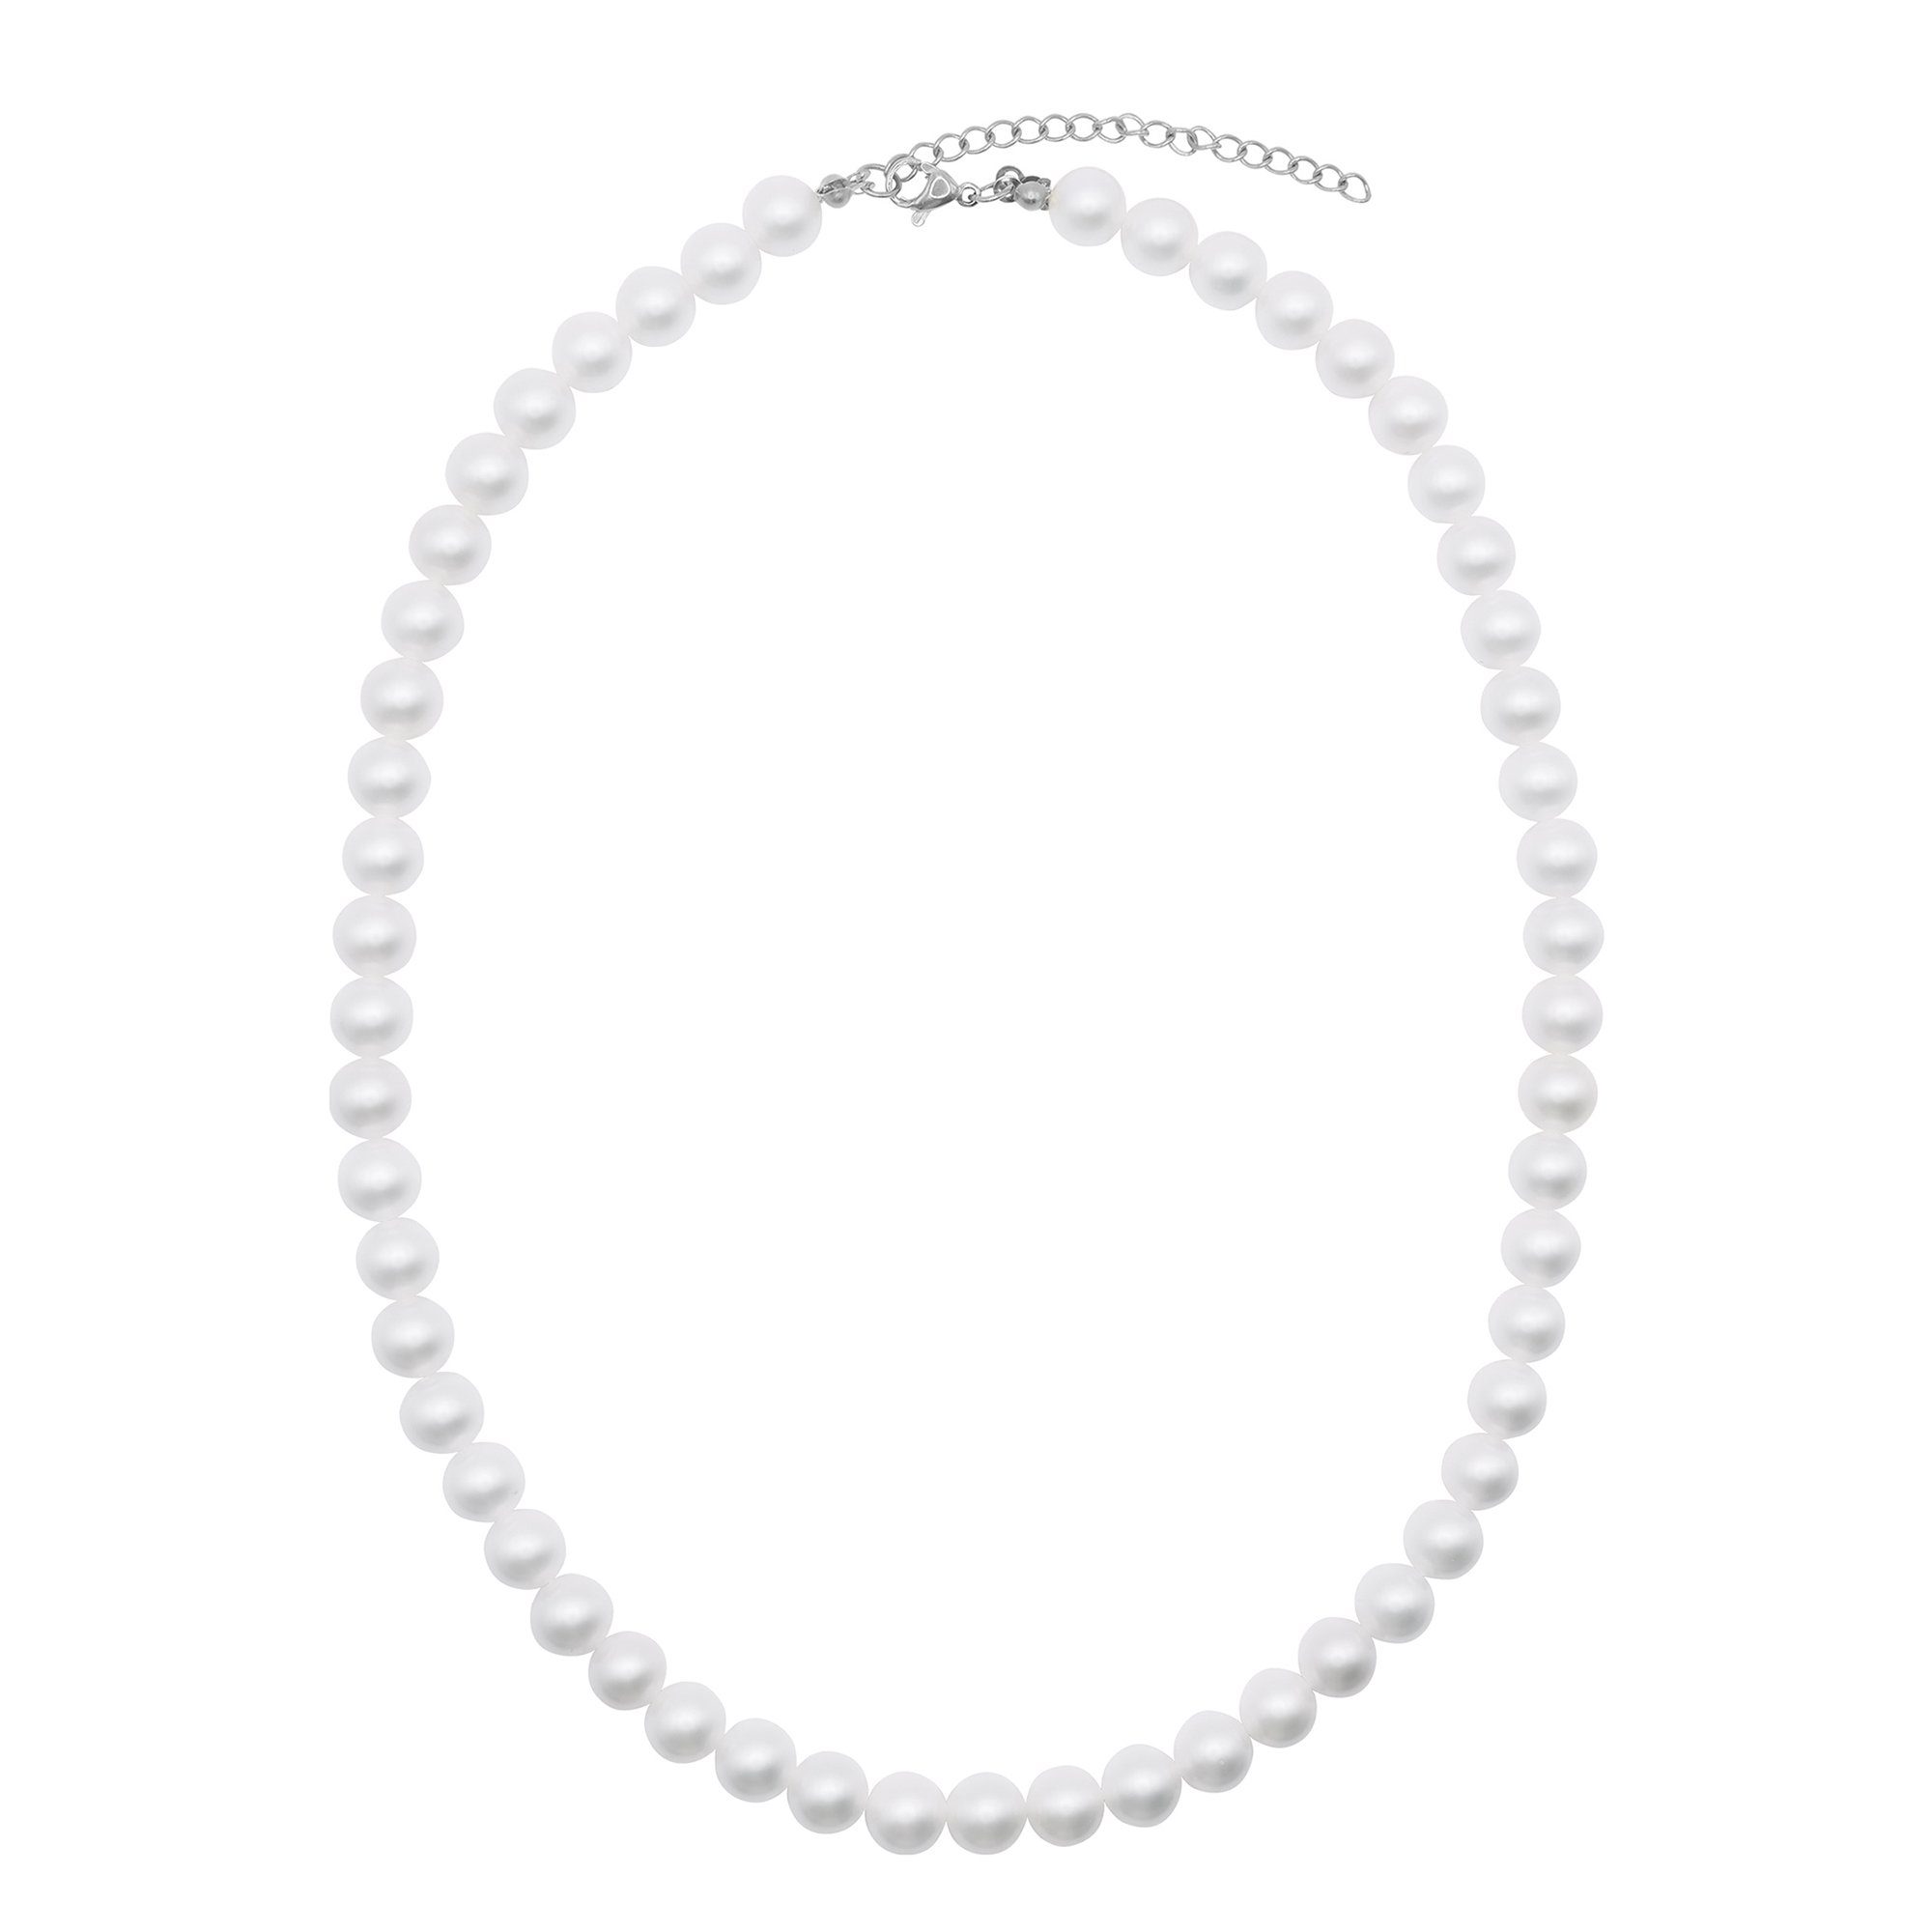 Heideman Collier Perlenkette No. 8 silberfarben glanzmatt (inkl. Geschenkverpackung), Collier mit Perlen weiß oder farbig silberfarben poliert